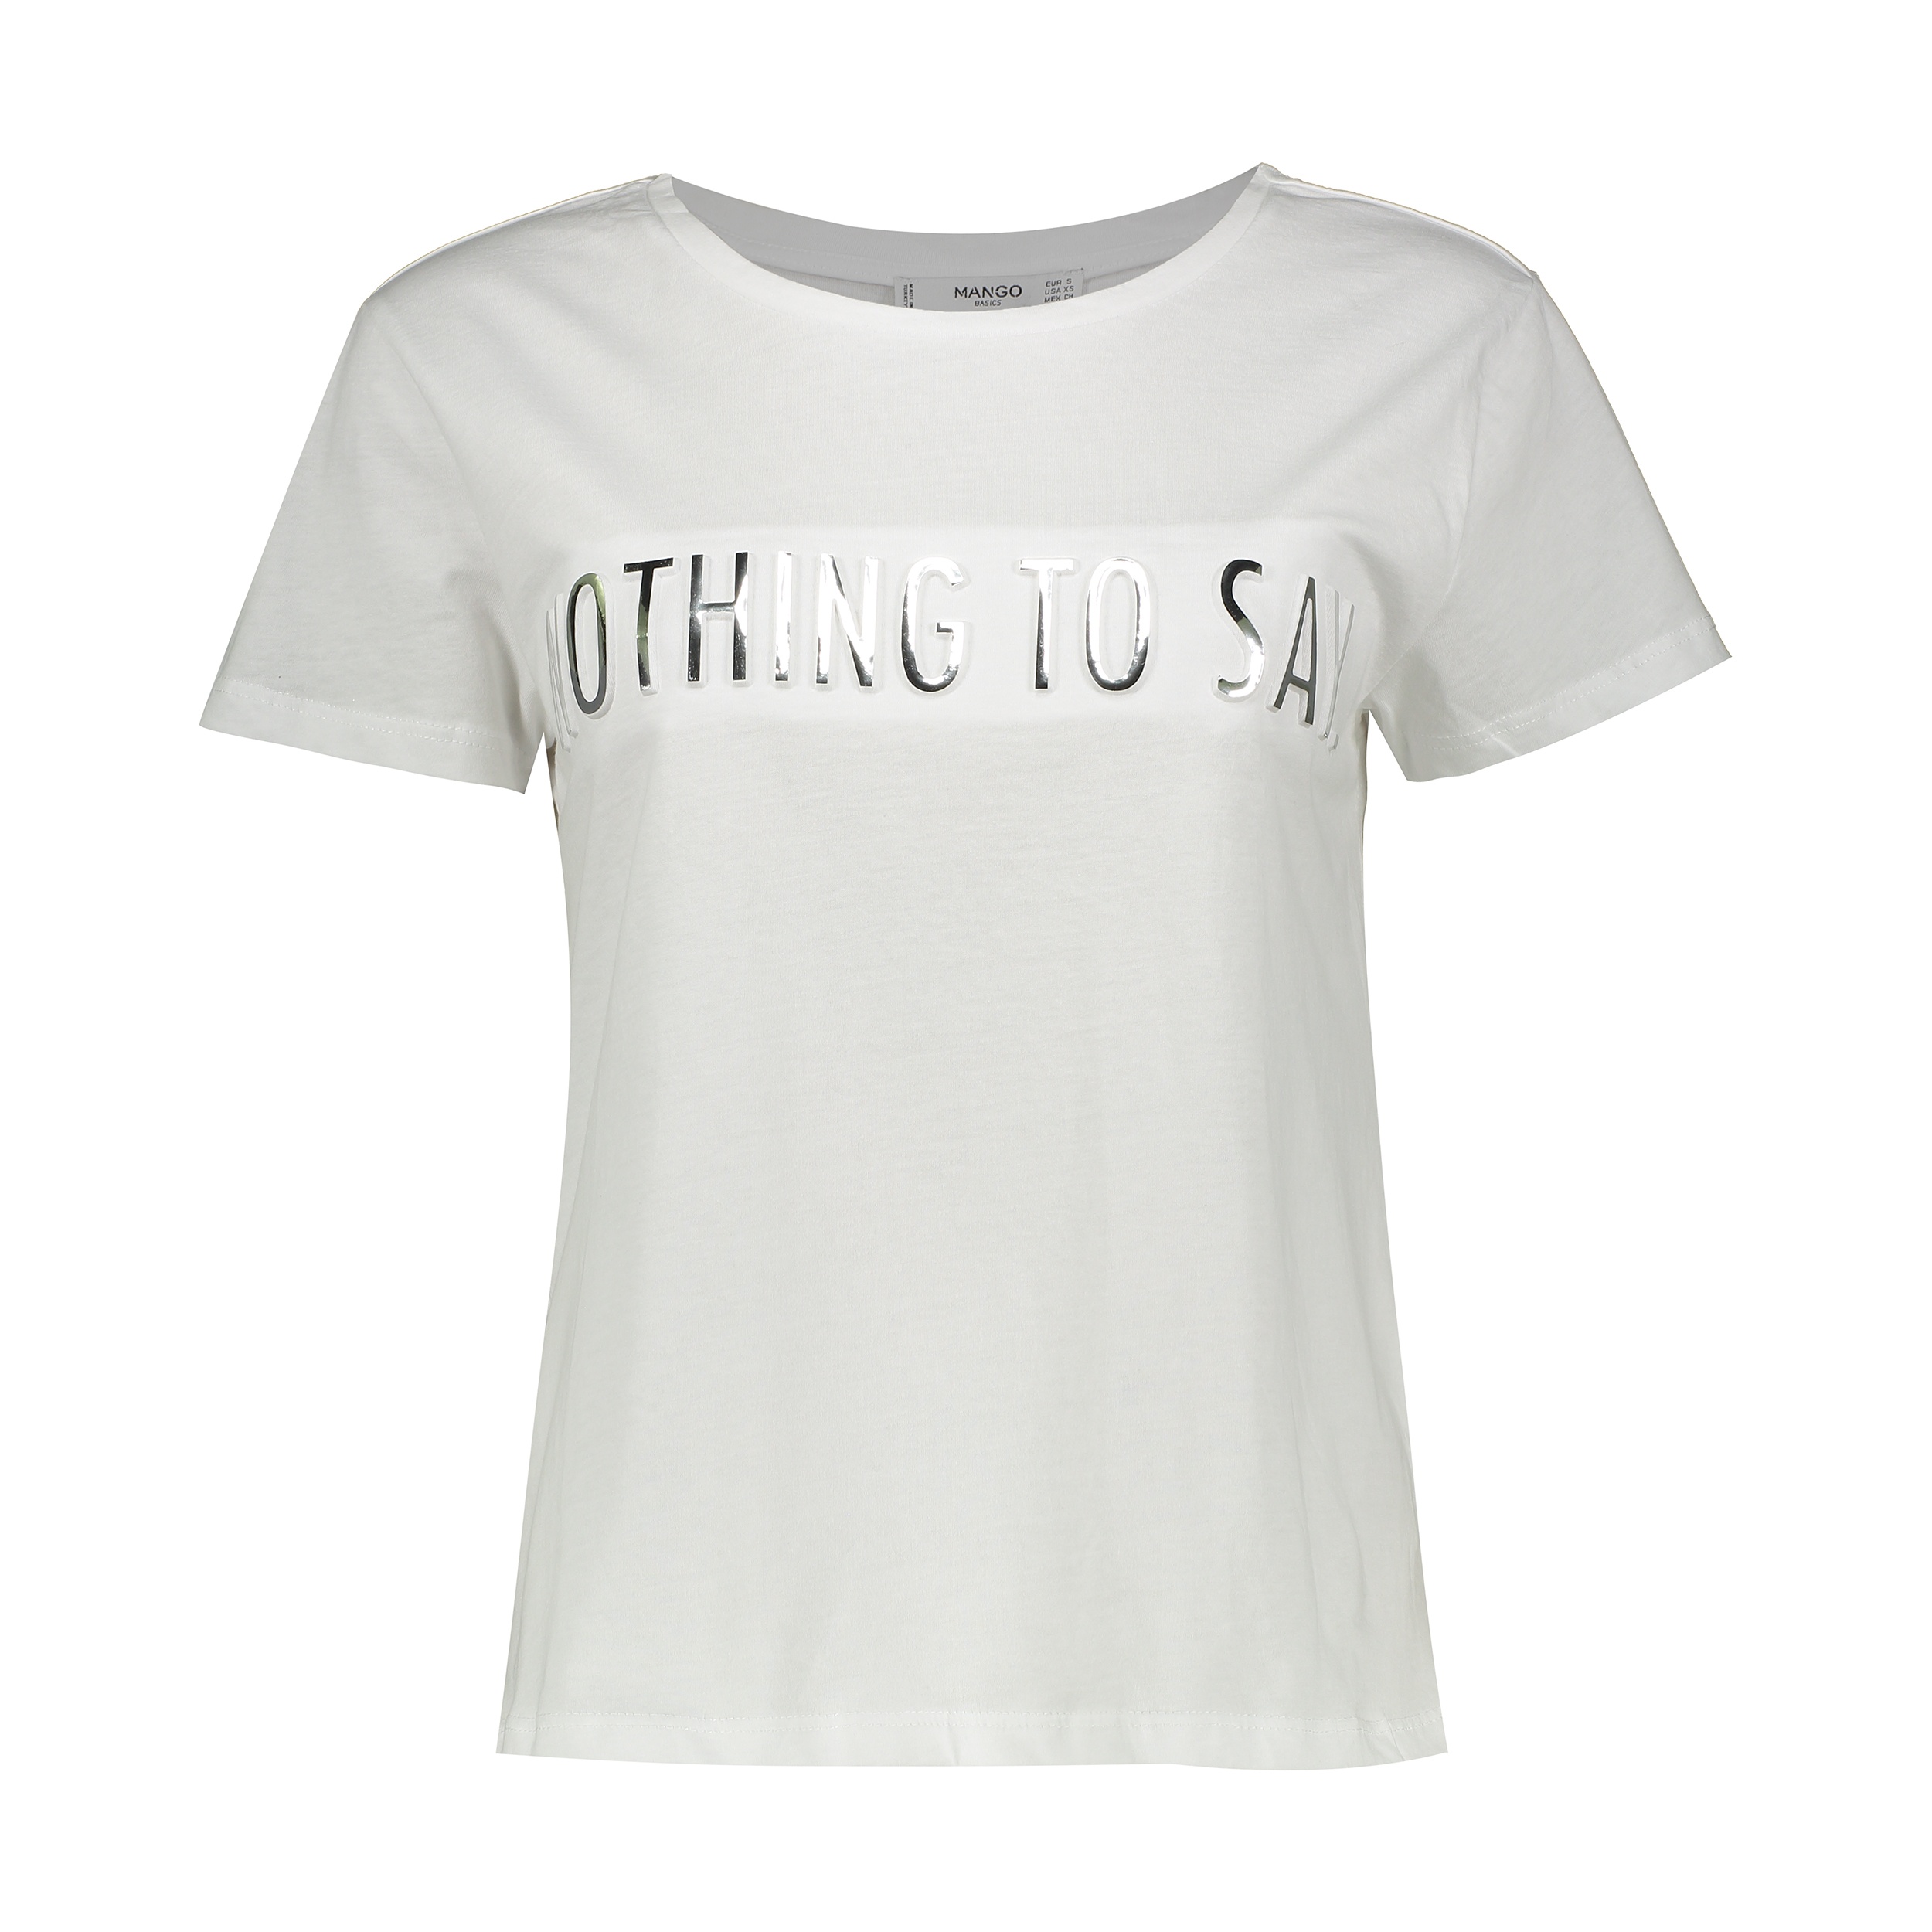 تی شرت نخی یقه گرد زنانه - مانگو - سفید - 1